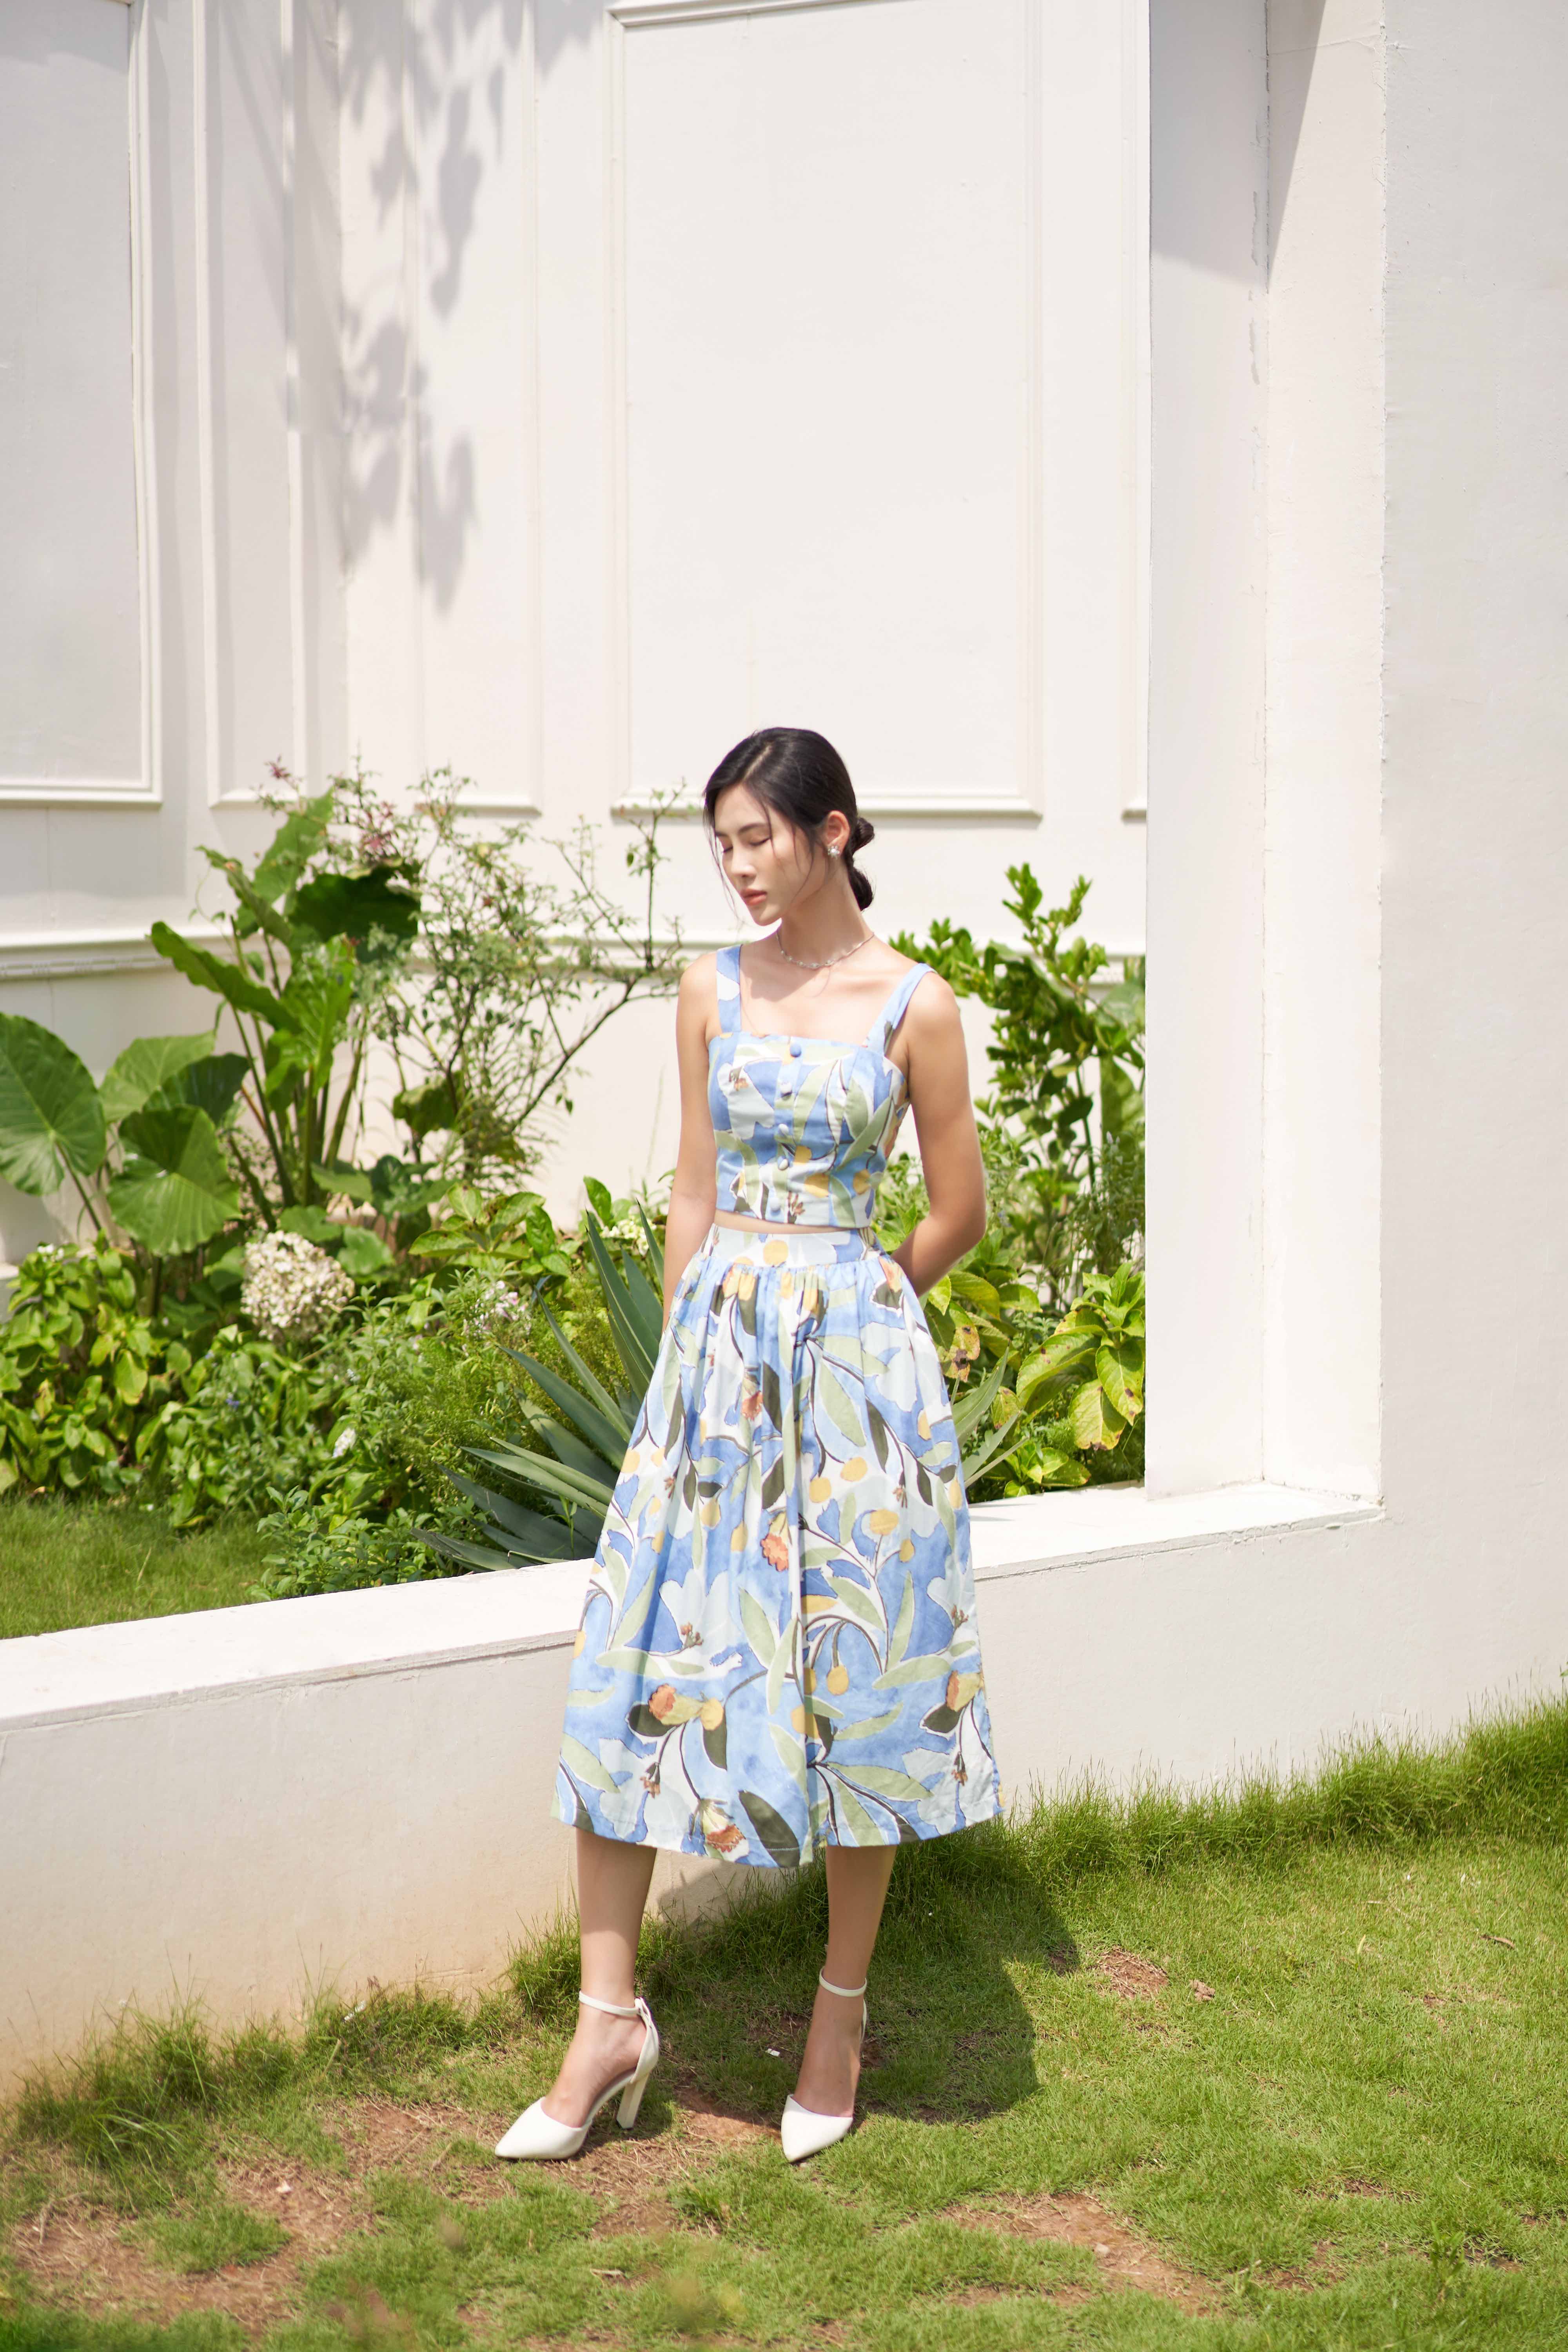 Mẫu váy quây hoa nhí xinh xắn 🤍 📌 𝗧𝗵𝗼̂𝗻𝗴 𝘁𝗶𝗻 𝘀𝗮̉𝗻 𝗽𝗵𝗮̂̉𝗺  ▫️ Size : S ... | Instagram